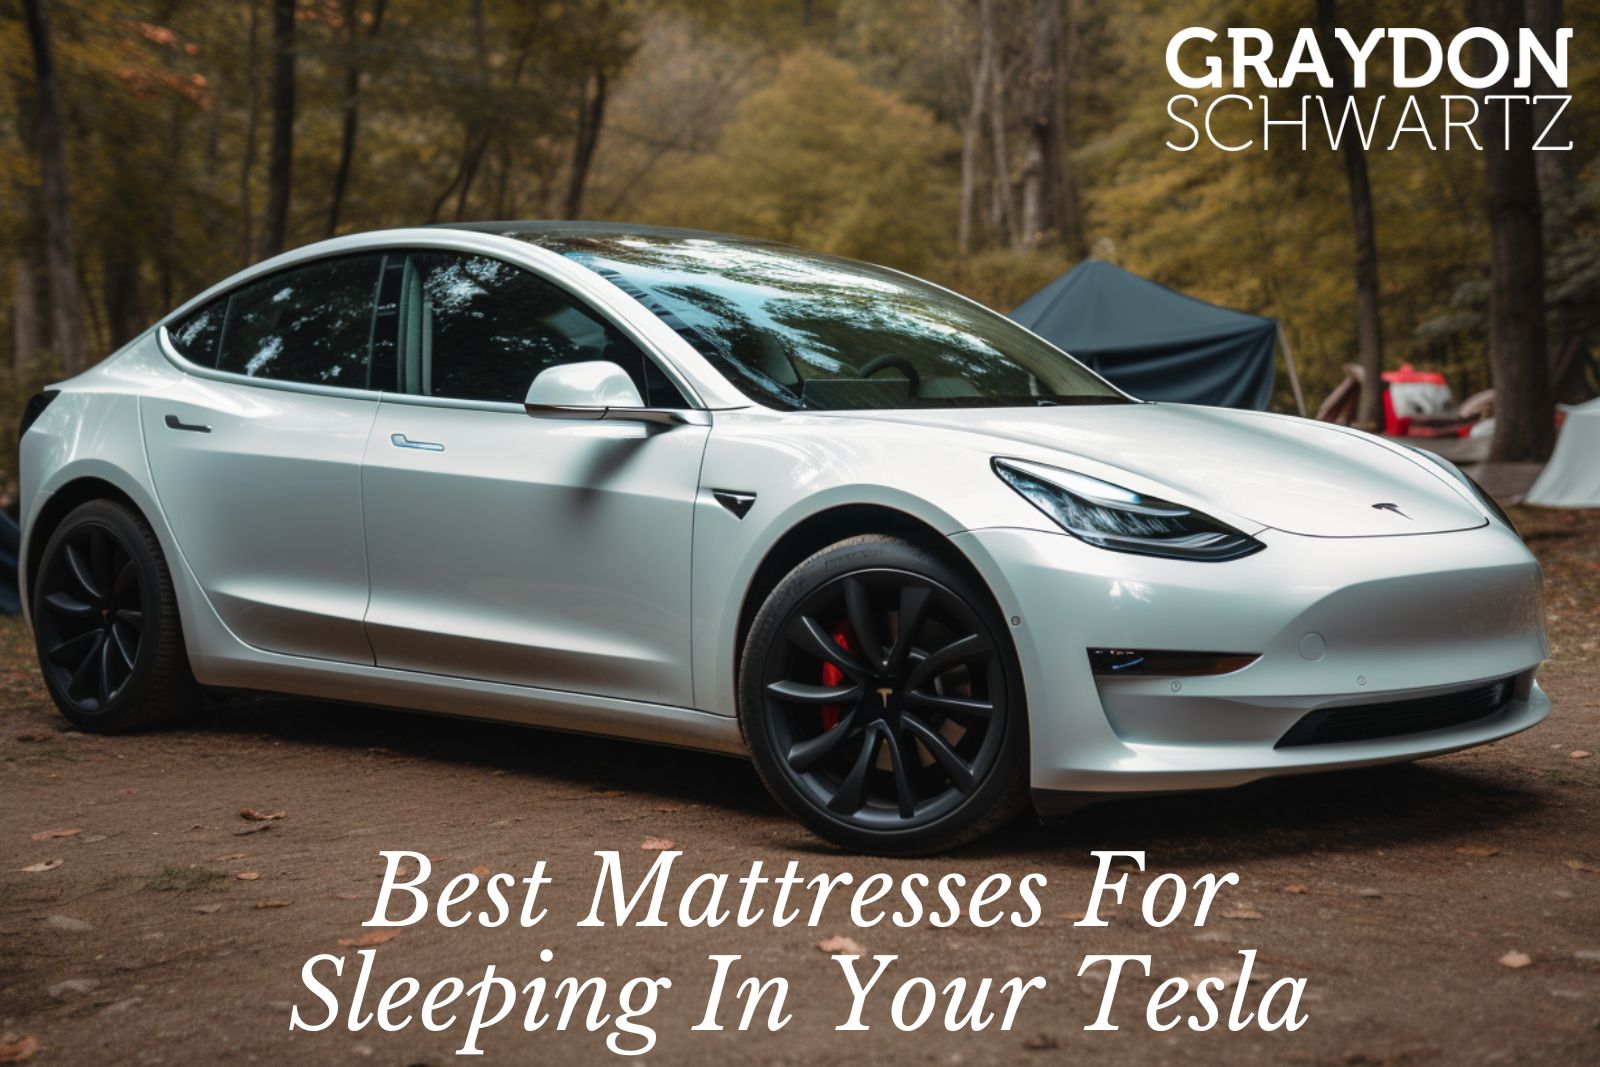 Dreamcase vs. TESMAT - Welche Matratze ist besser für Tesla Model 3 und Model Y?